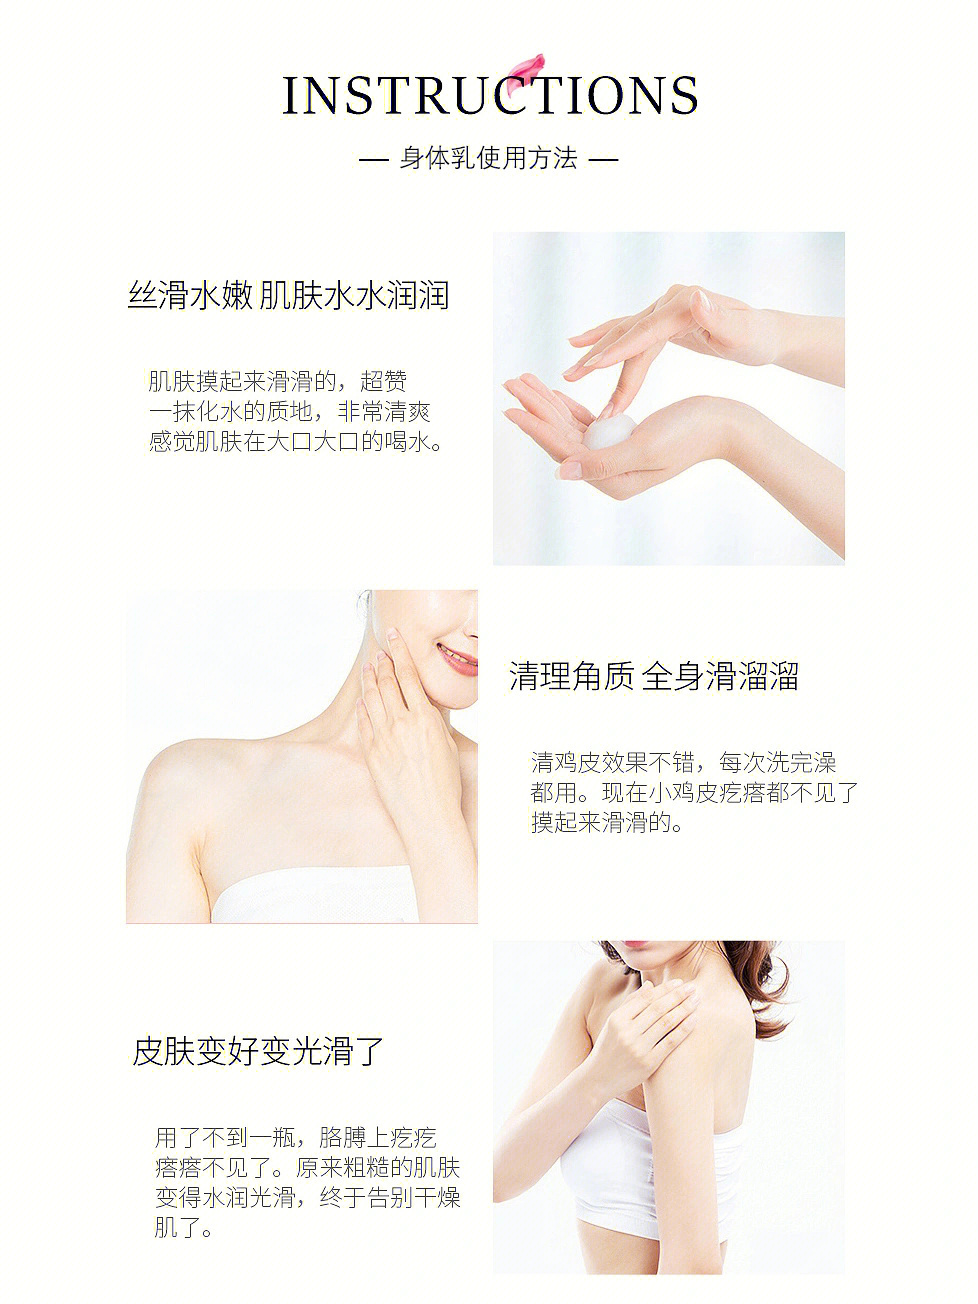 如何使用和选择合适的身体乳